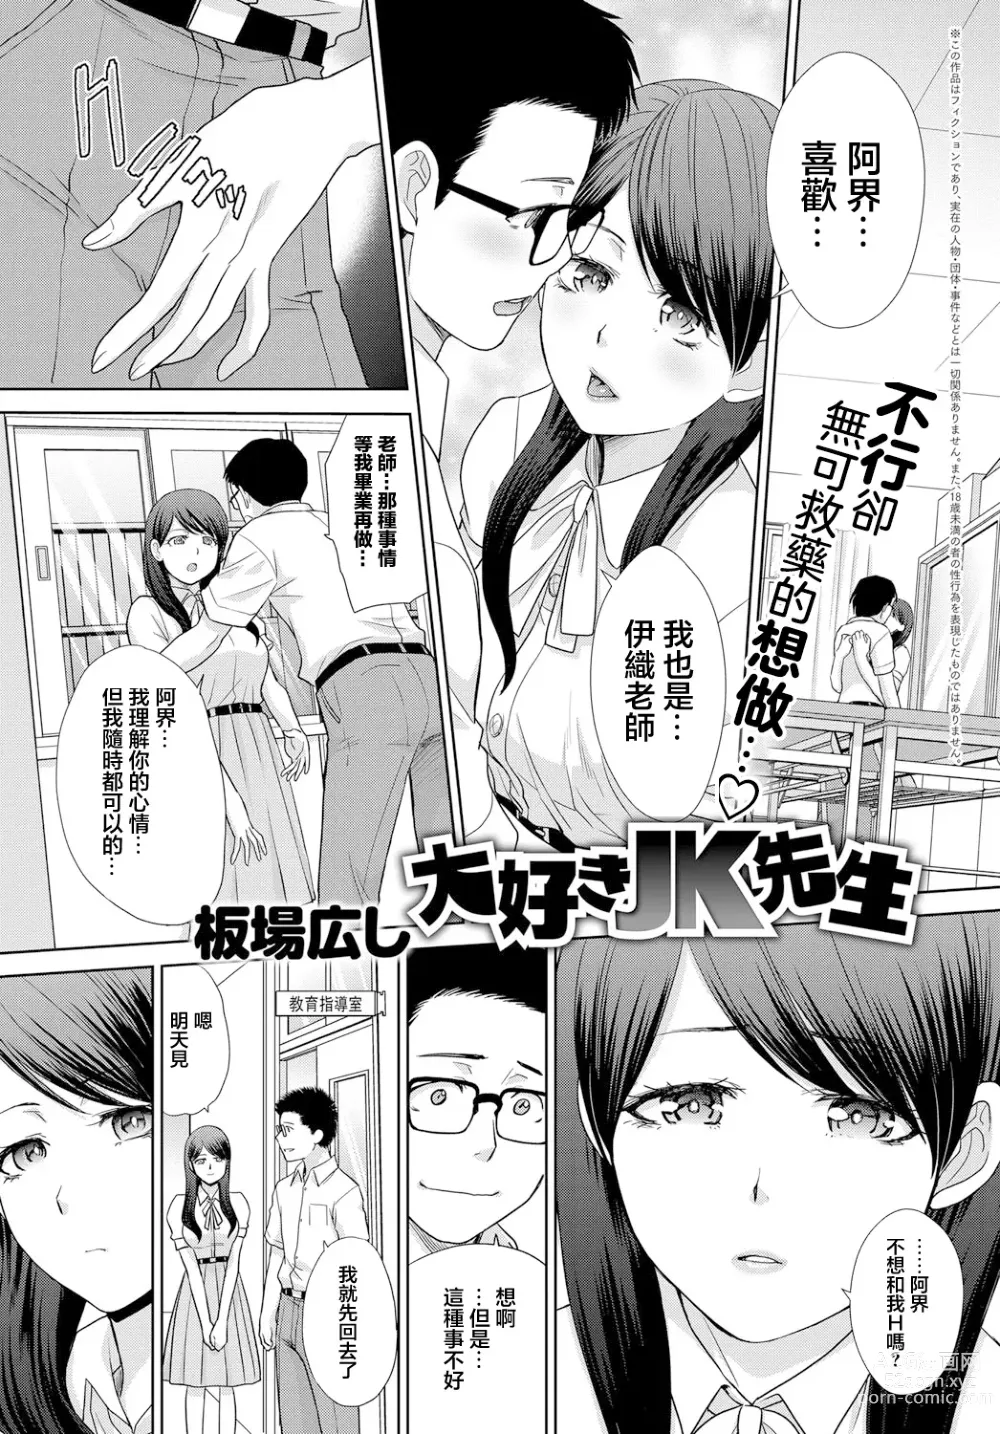 Page 1 of manga Daisuki JK Sensei